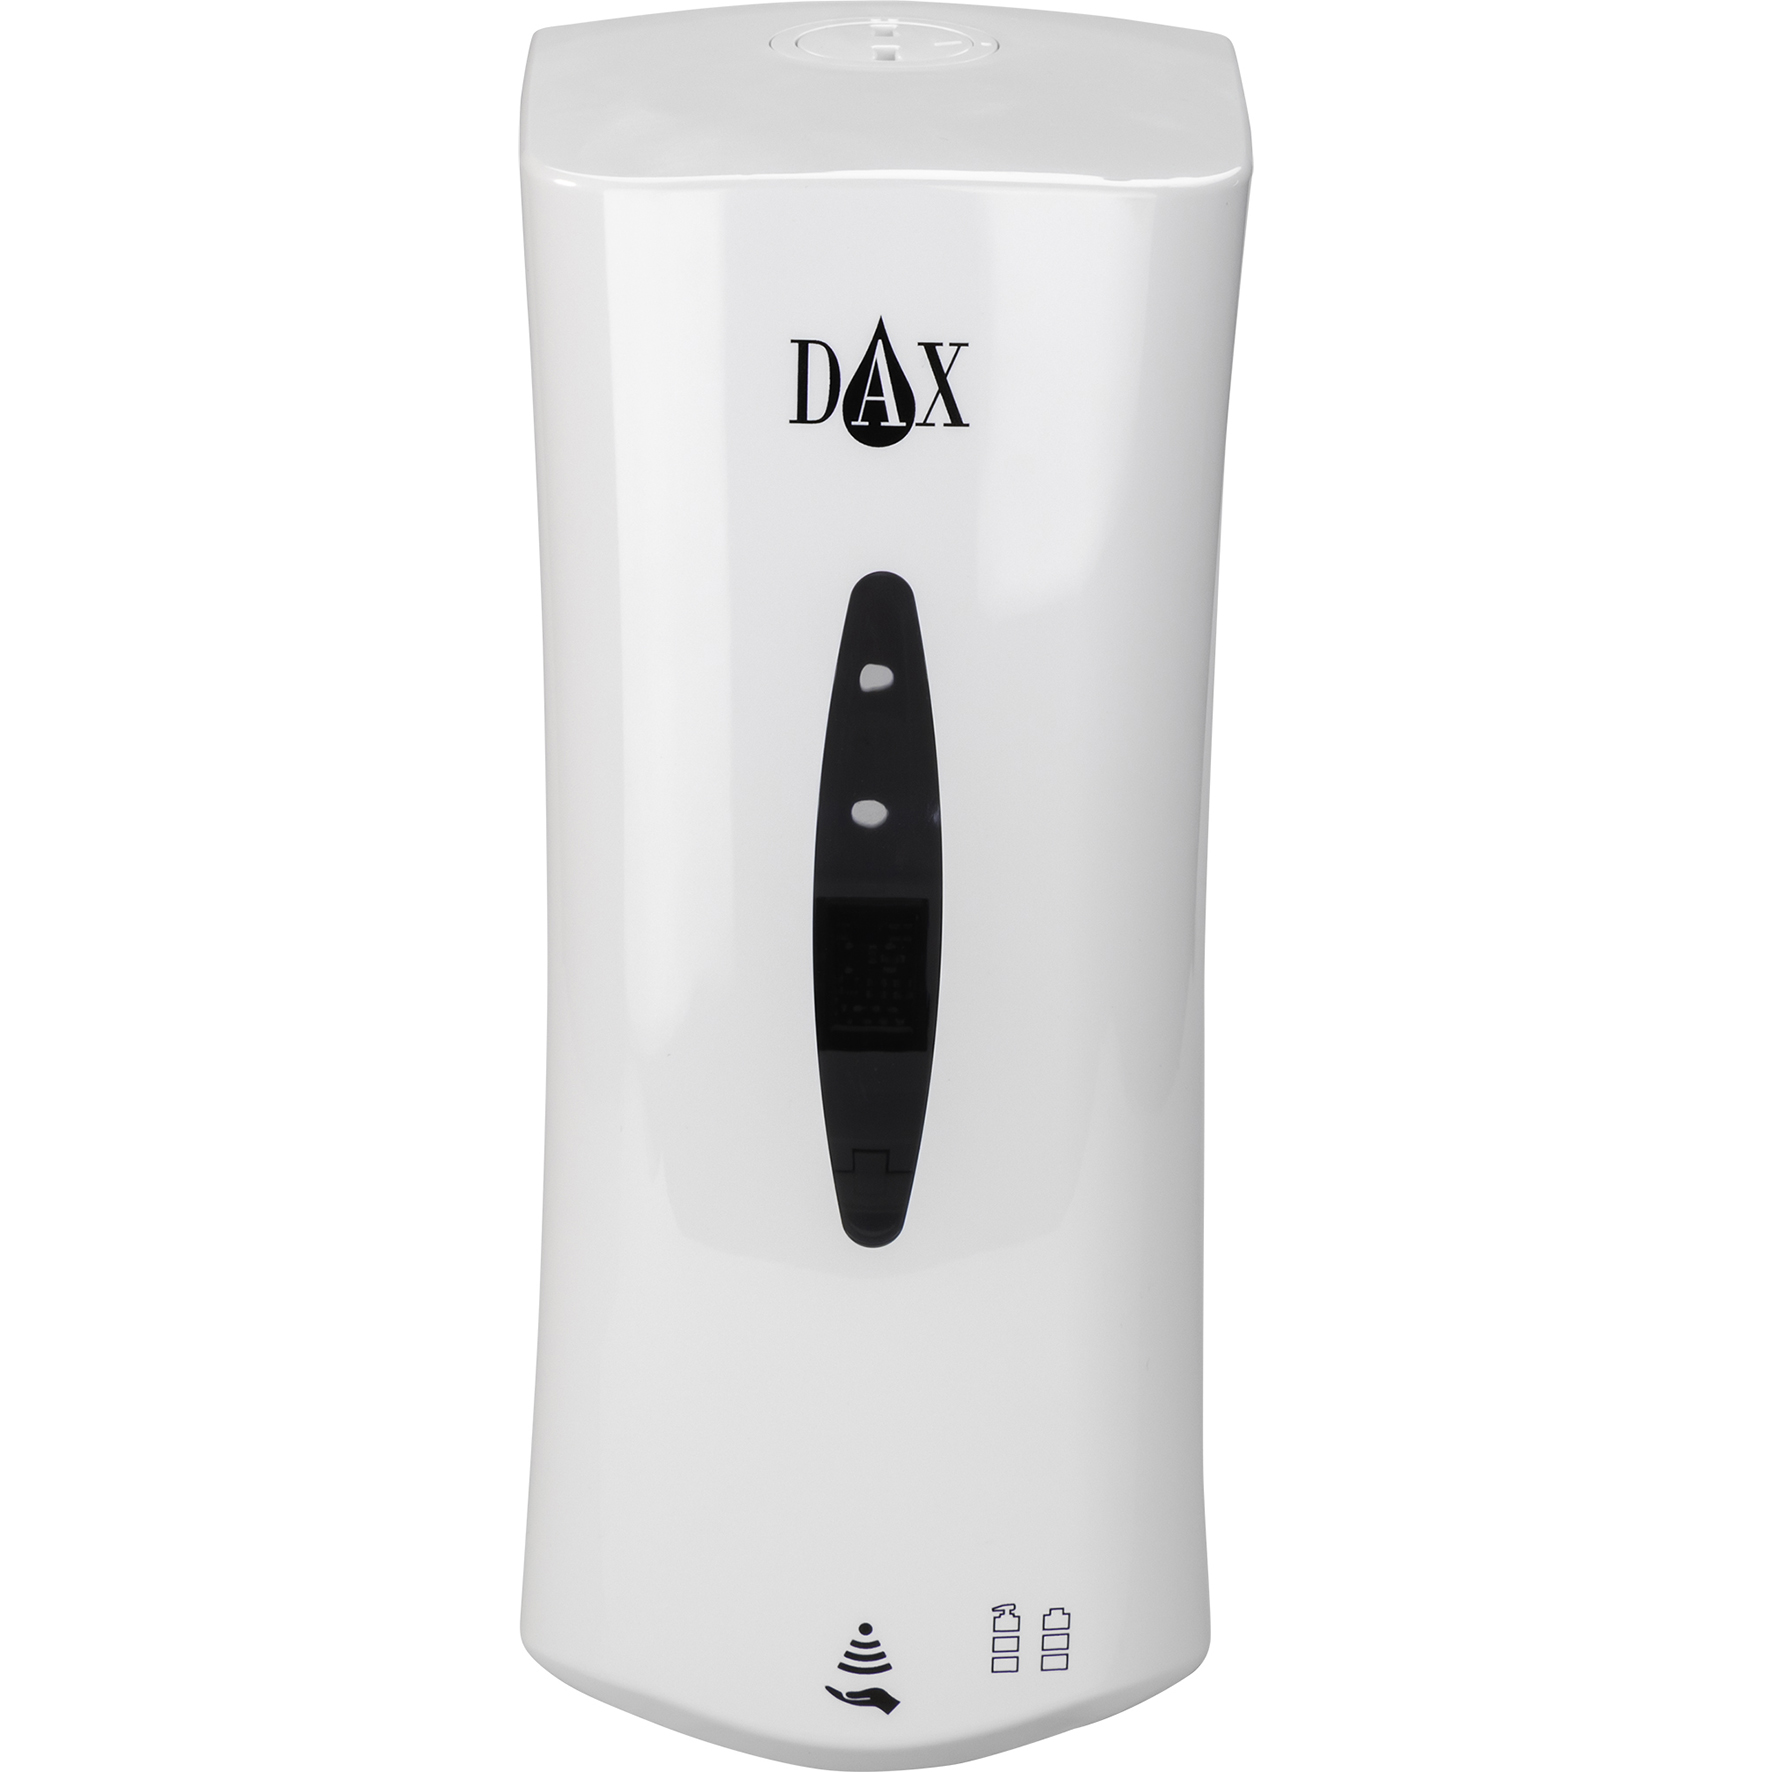 [8558152] DAX SMART Aut. dispenser, vit